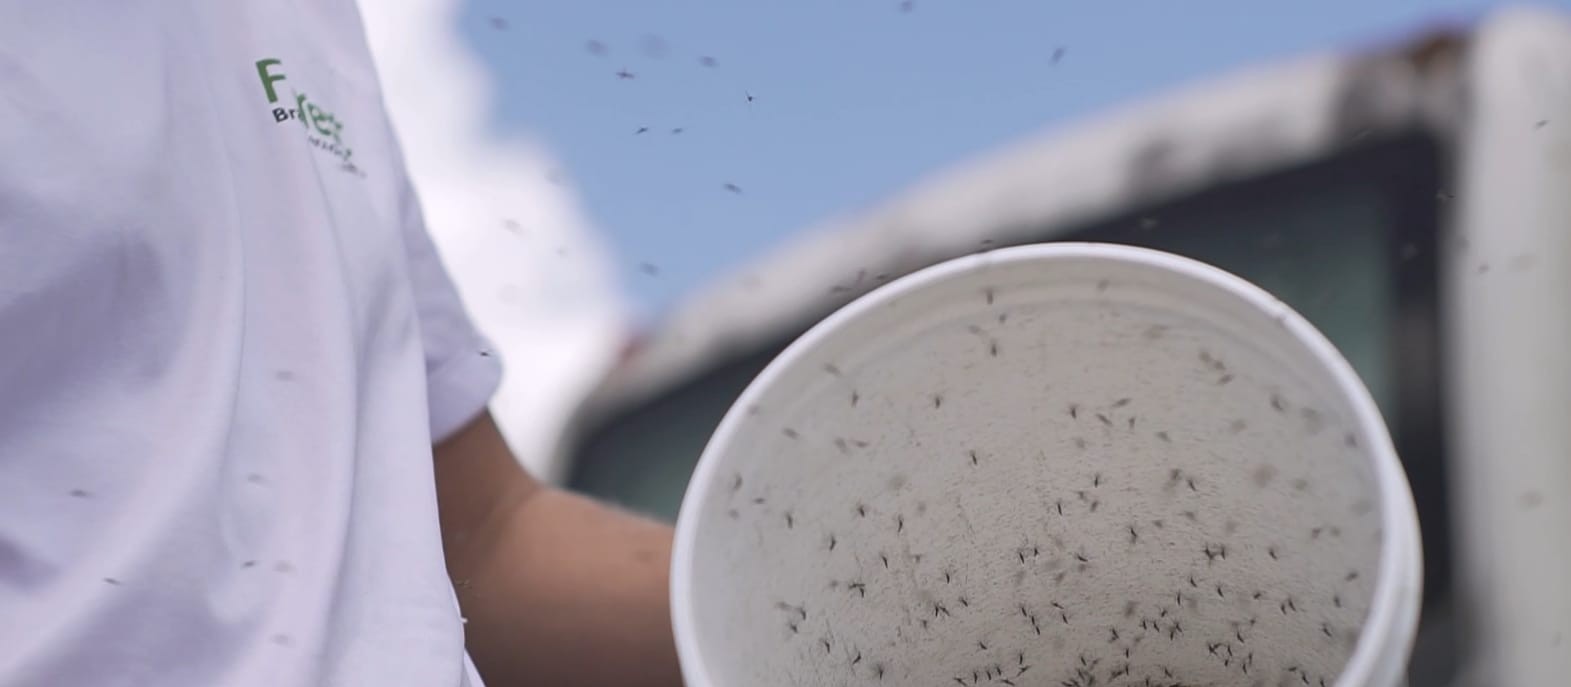 Biotecnologia israelense está erradicando o Aedes aegpyti em Ortigueira